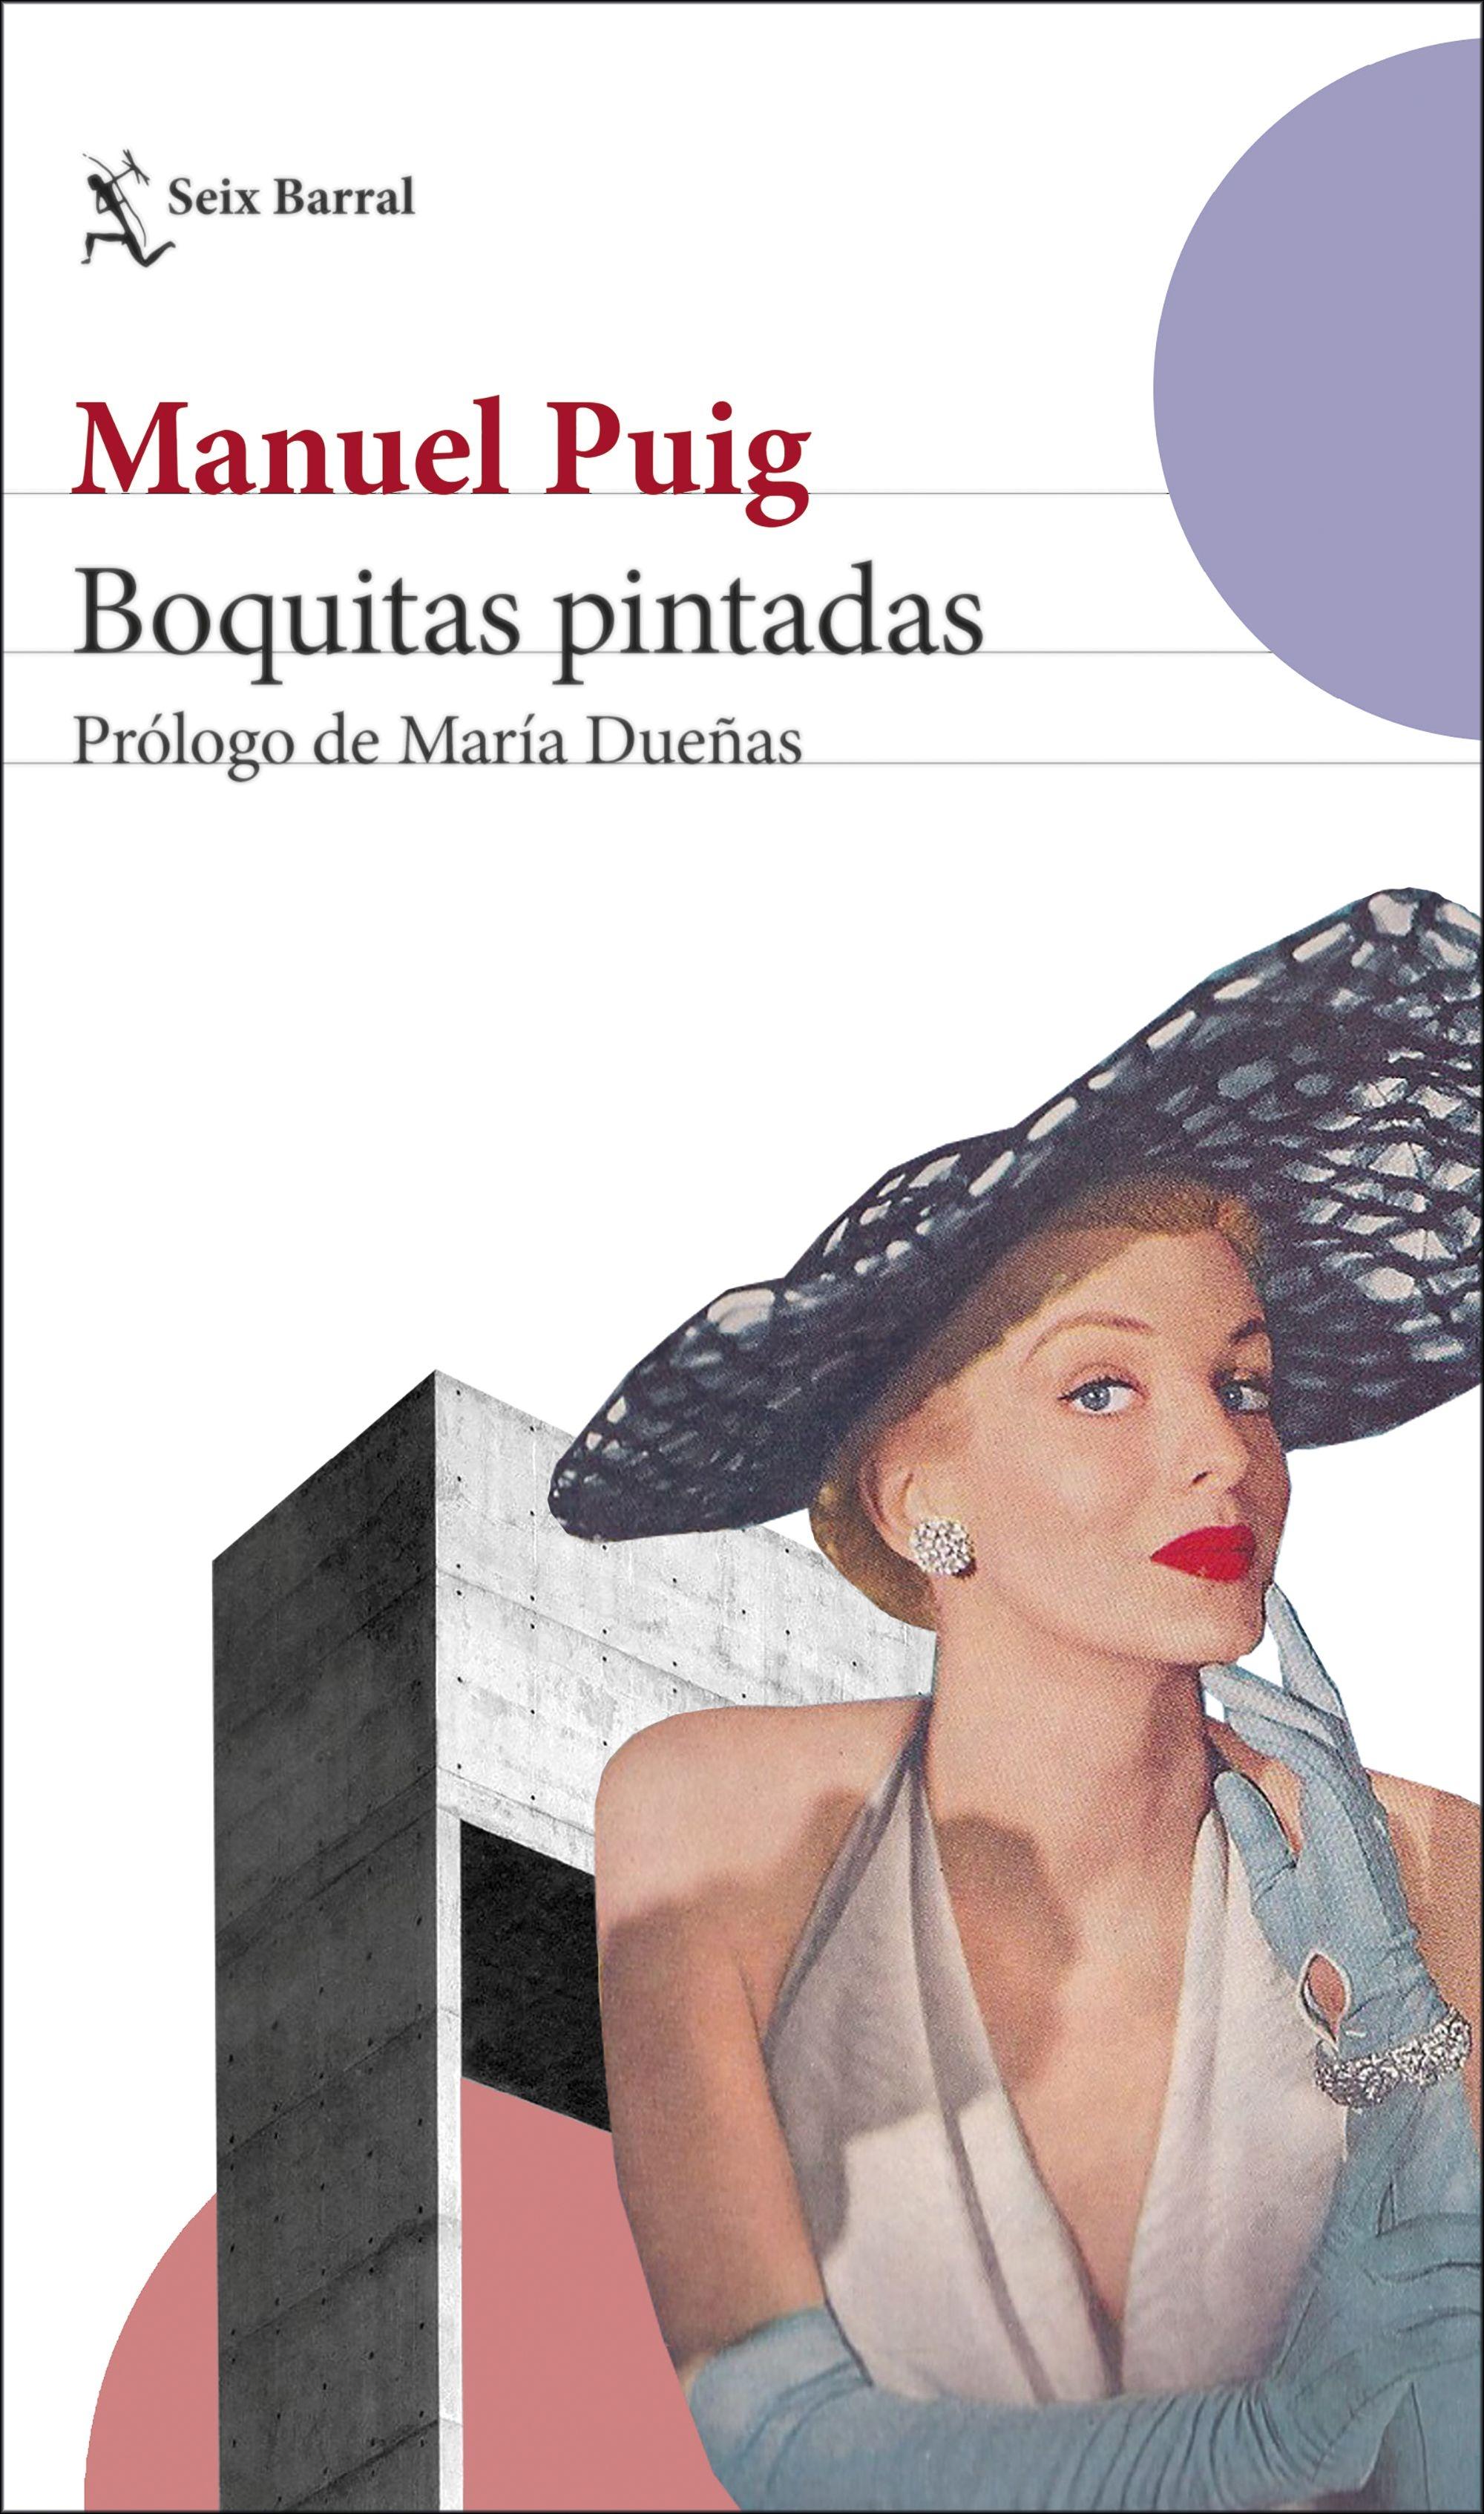 Boquitas Pintadas "Prólogo de María Dueñas". 